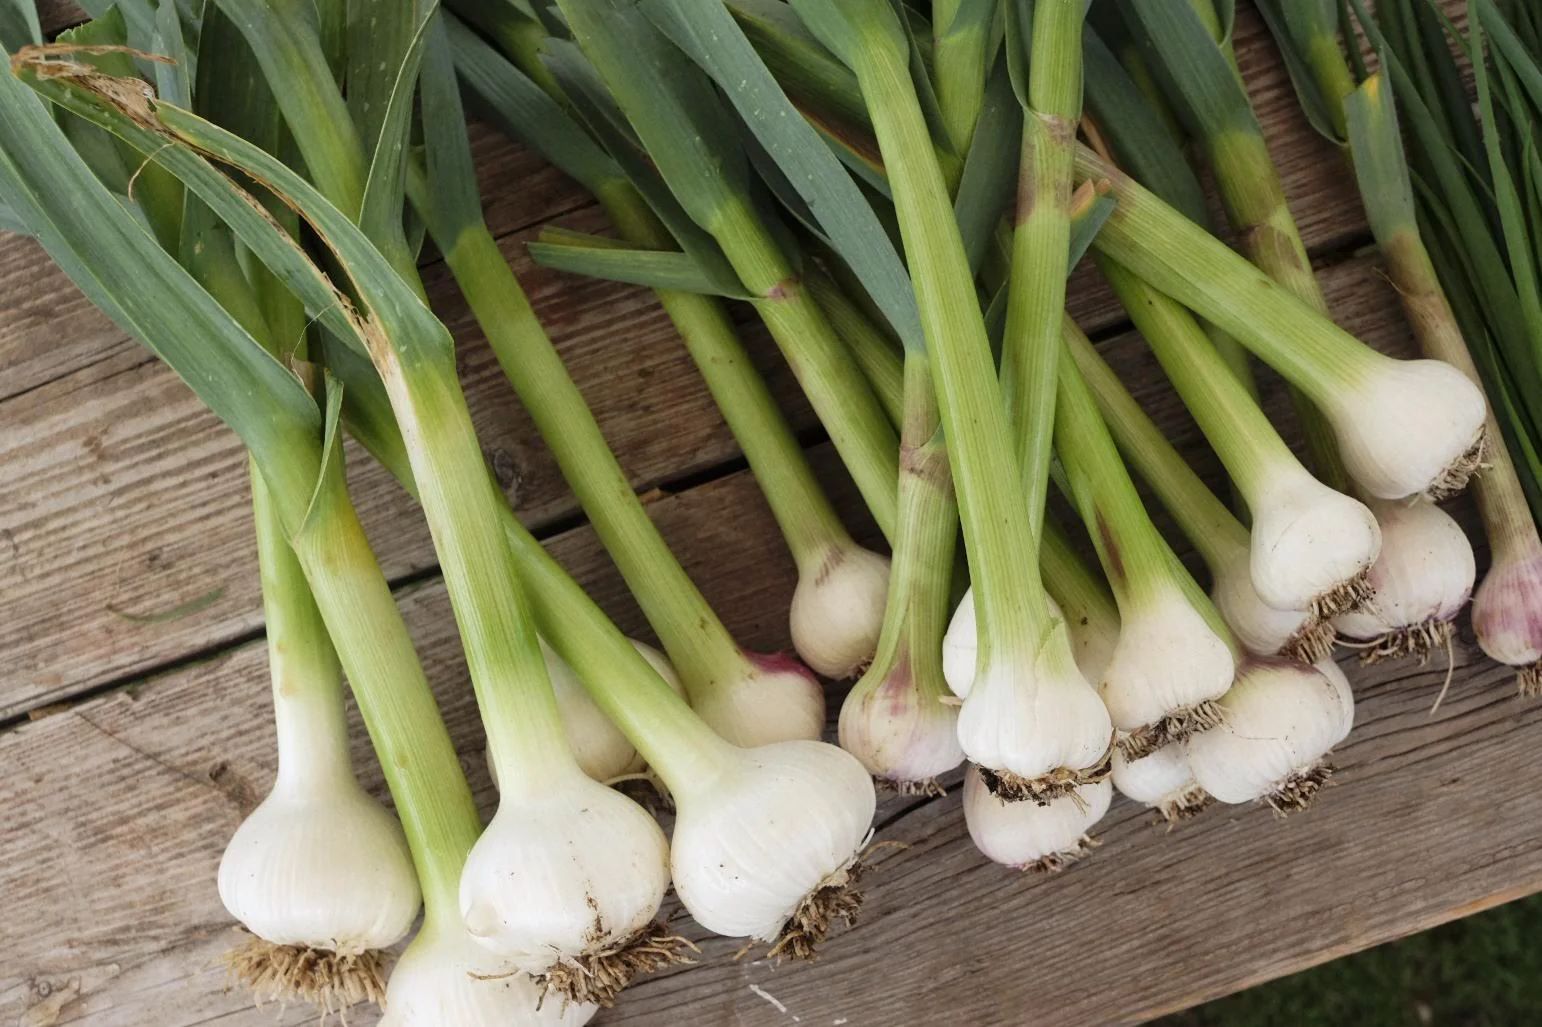 How To Store Fresh Garlic